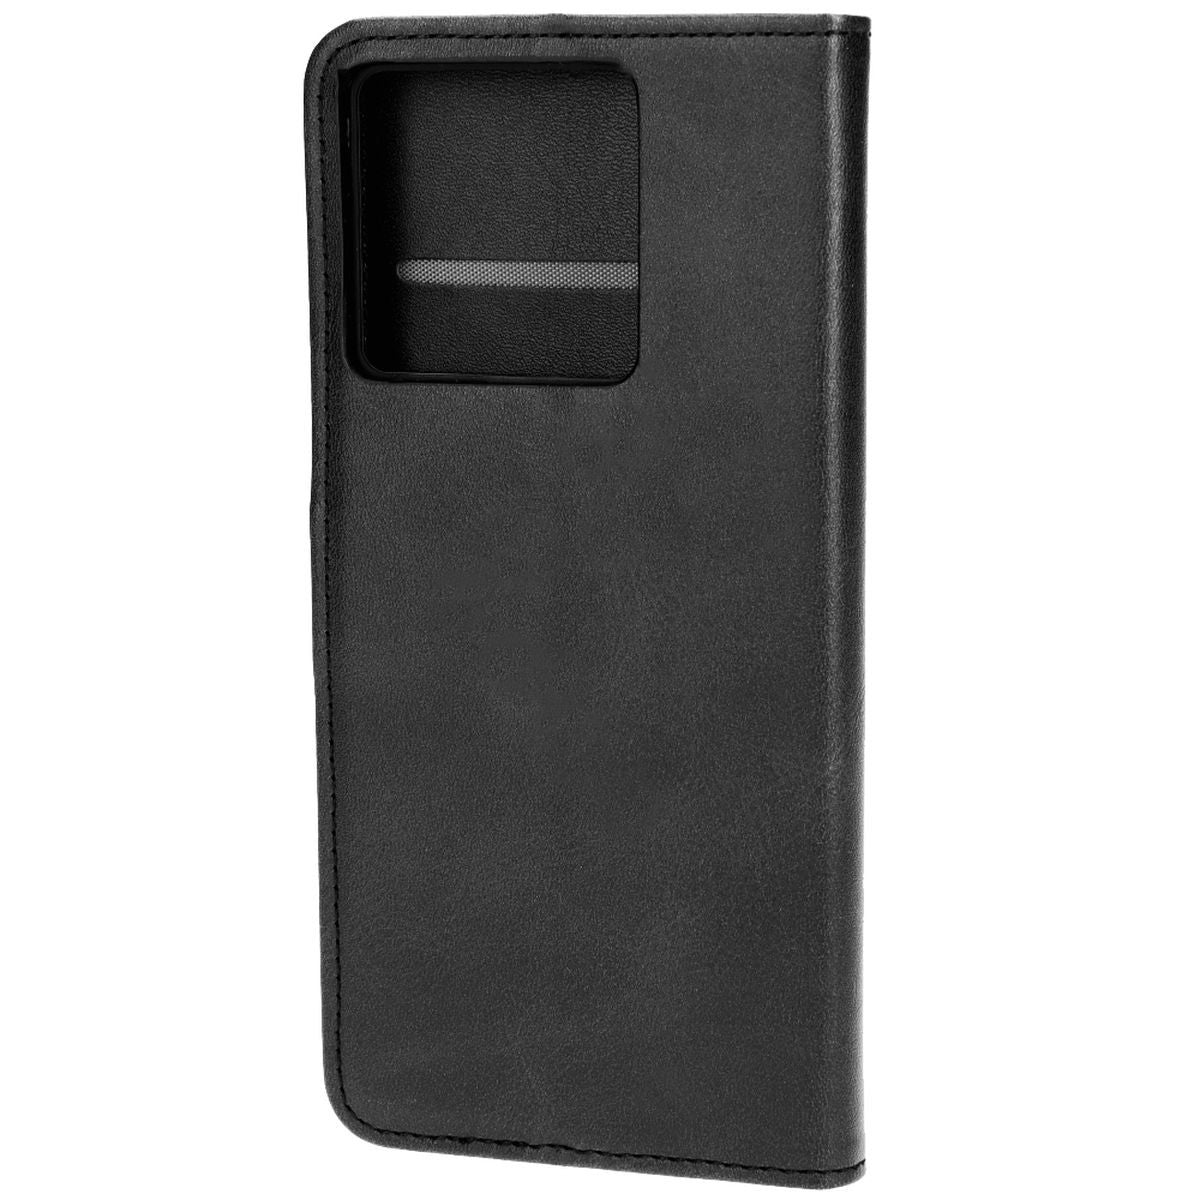 Schutzhülle für Xiaomi 13T / 13T Pro, Bizon Case Pocket, Schwarz